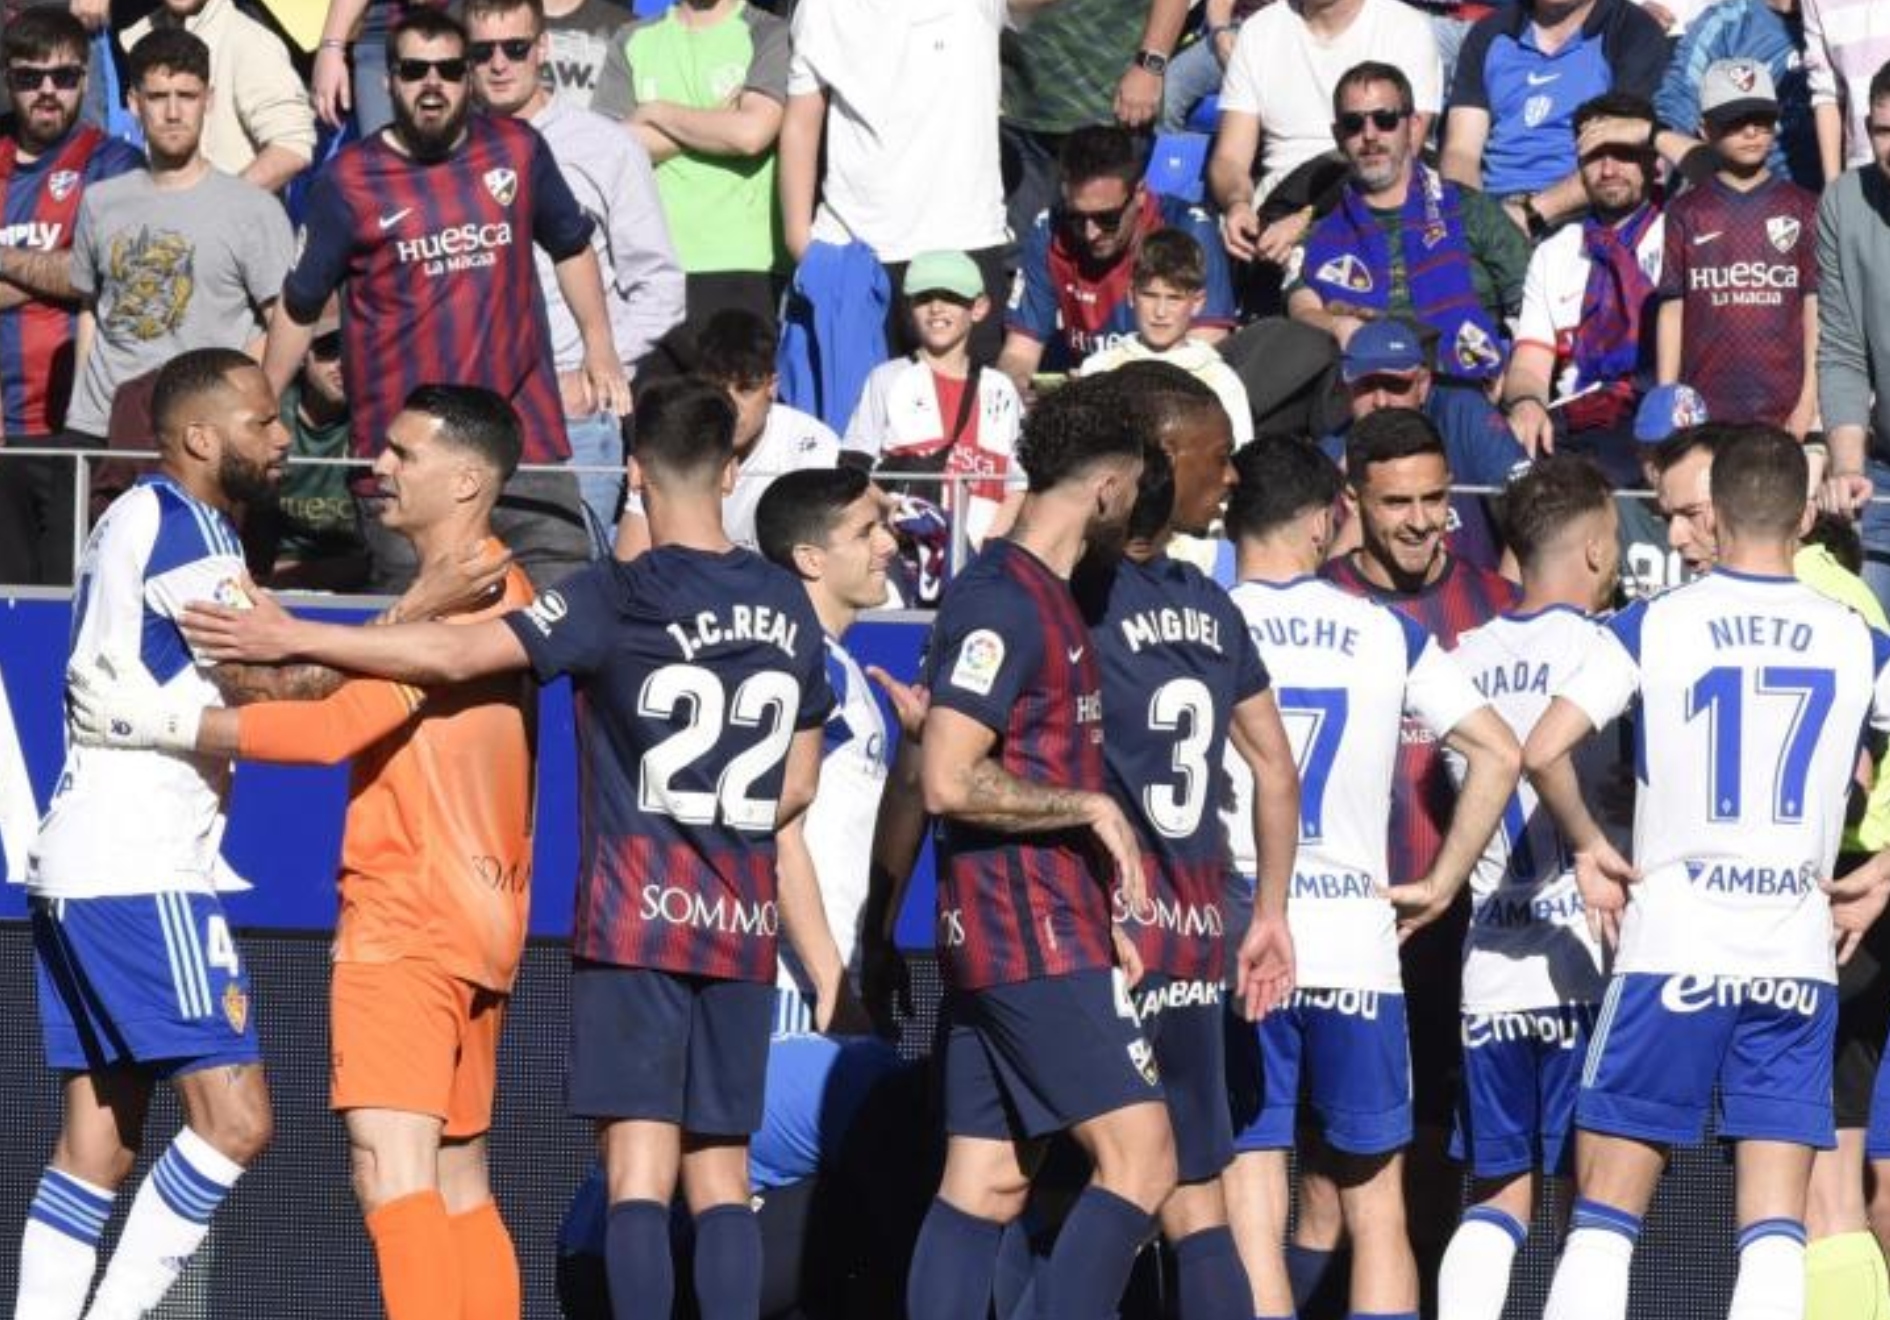 Los jugadores del Huesca y Zaragoza intentan poner tranquilidad al derbi tras las dos expulsiones de sus capitanes.